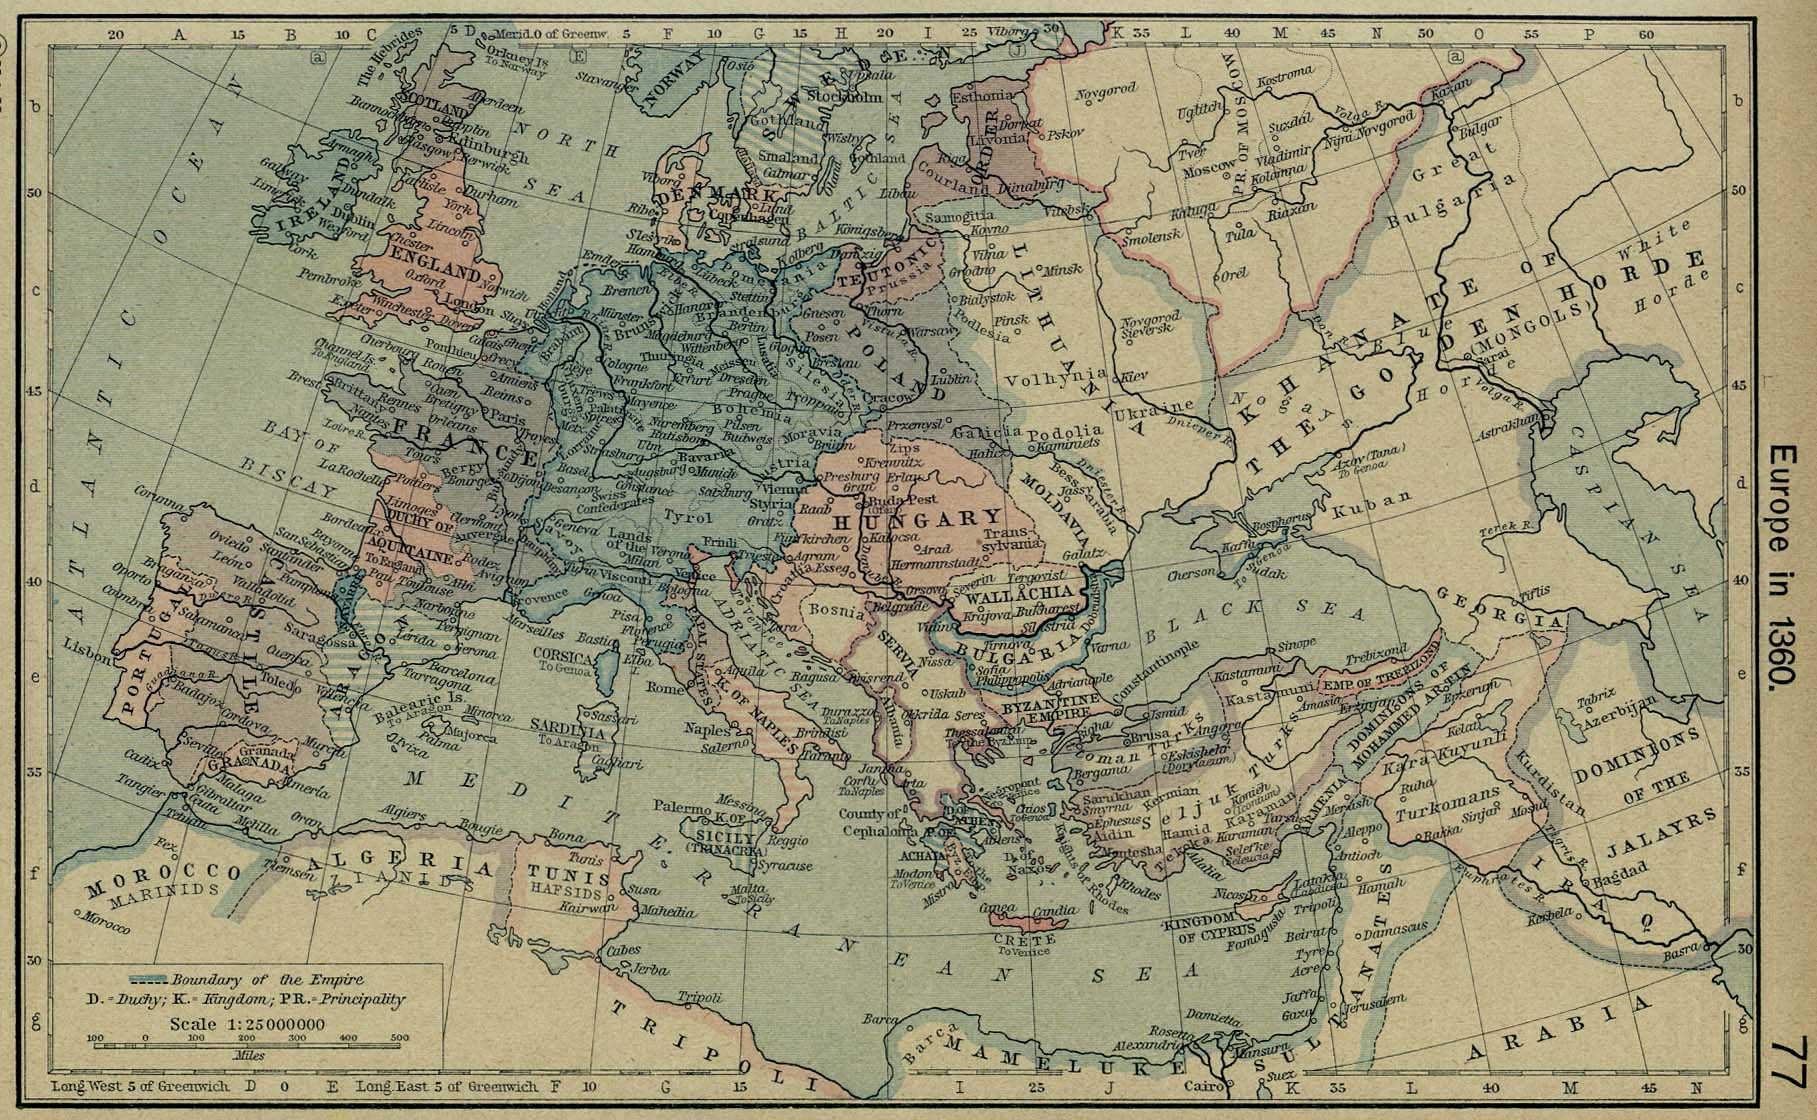 Europe c. 1360 C. E.